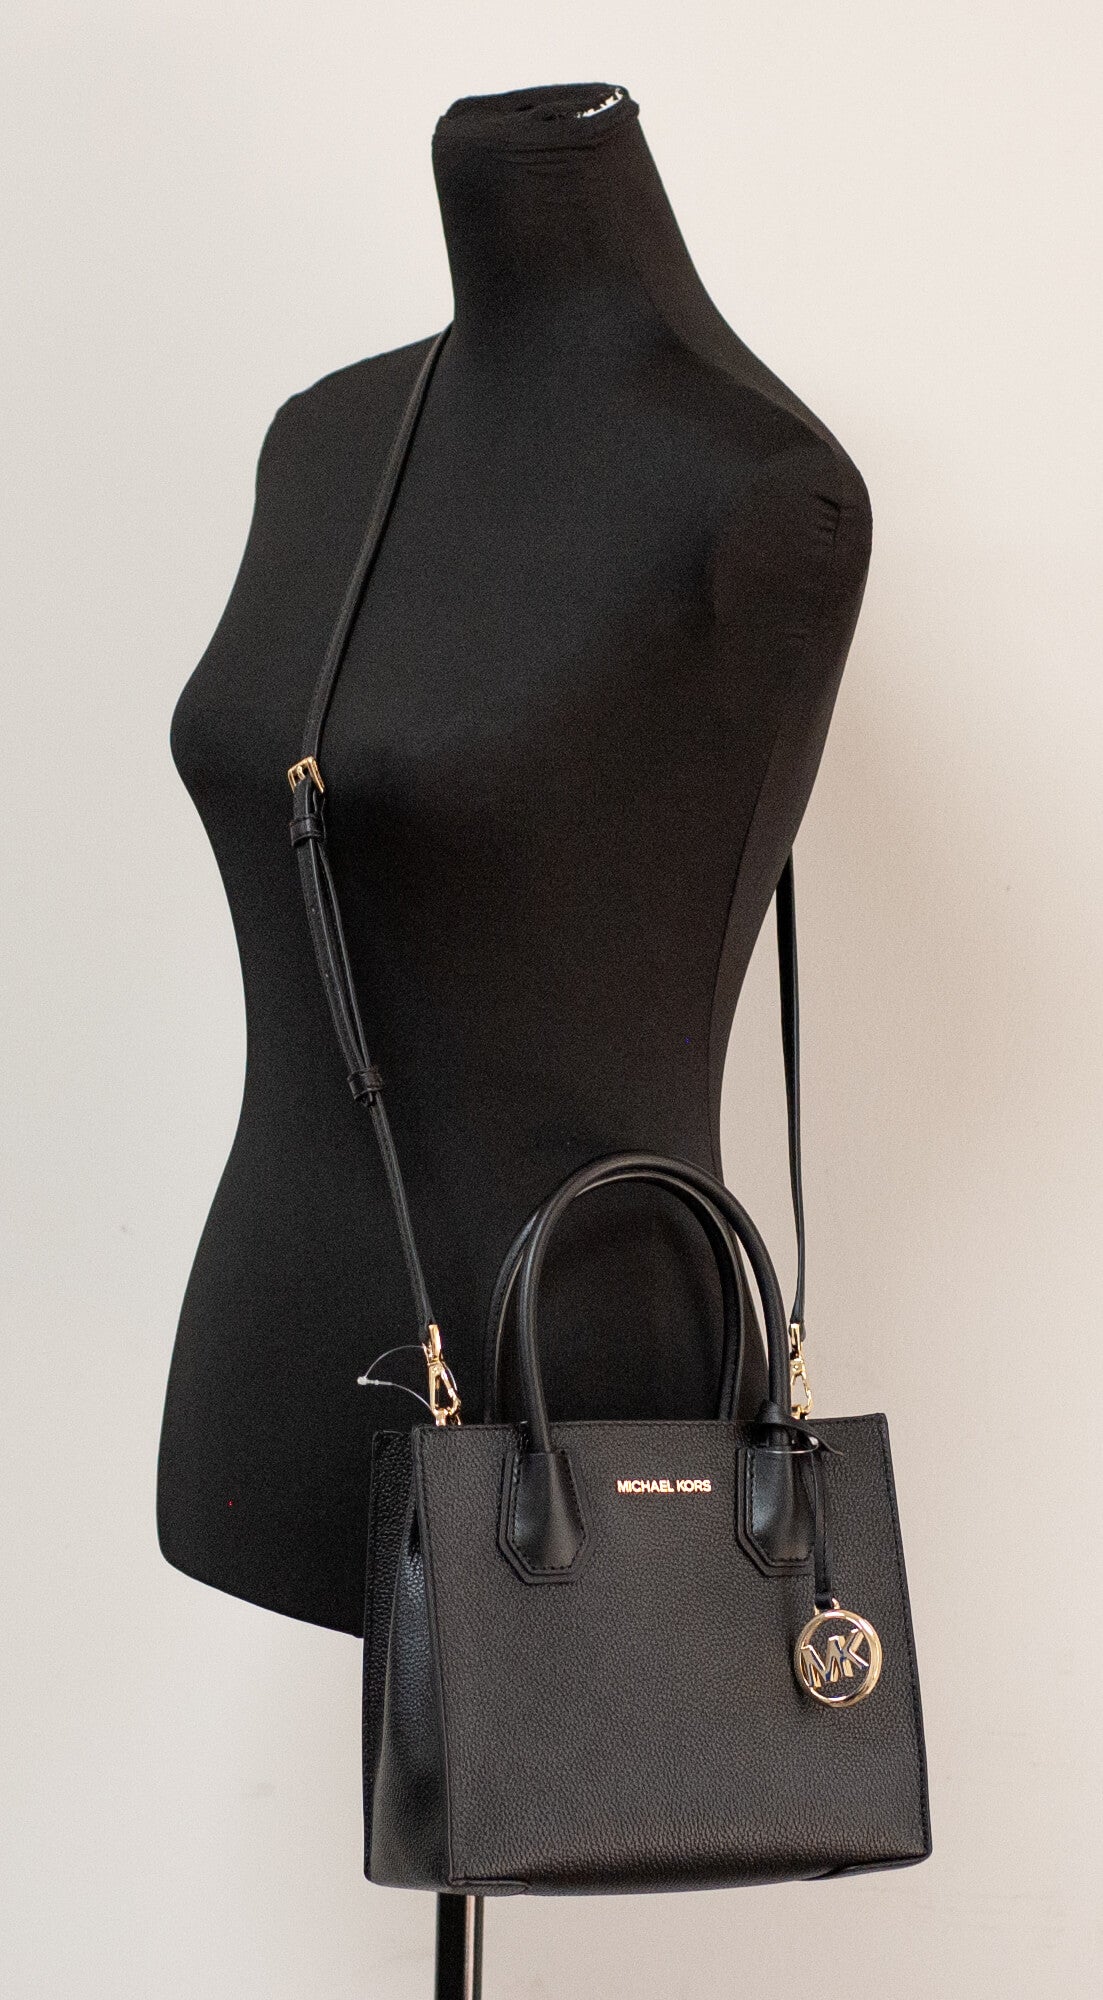 Michael Kors mercer black messenger bag on mannequin